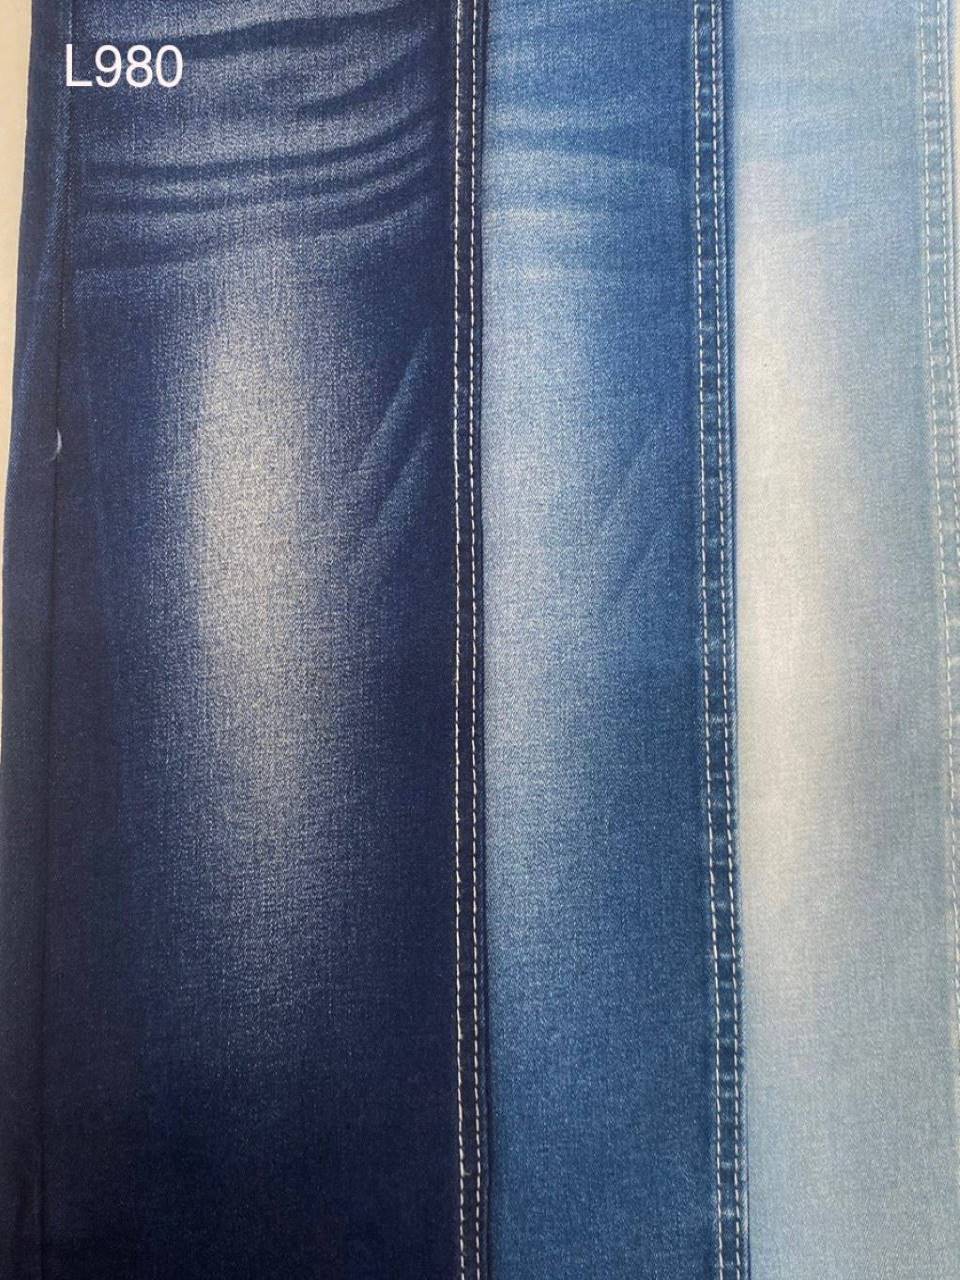 Vải jean Nữ thun L980 xước dọc nhẹ